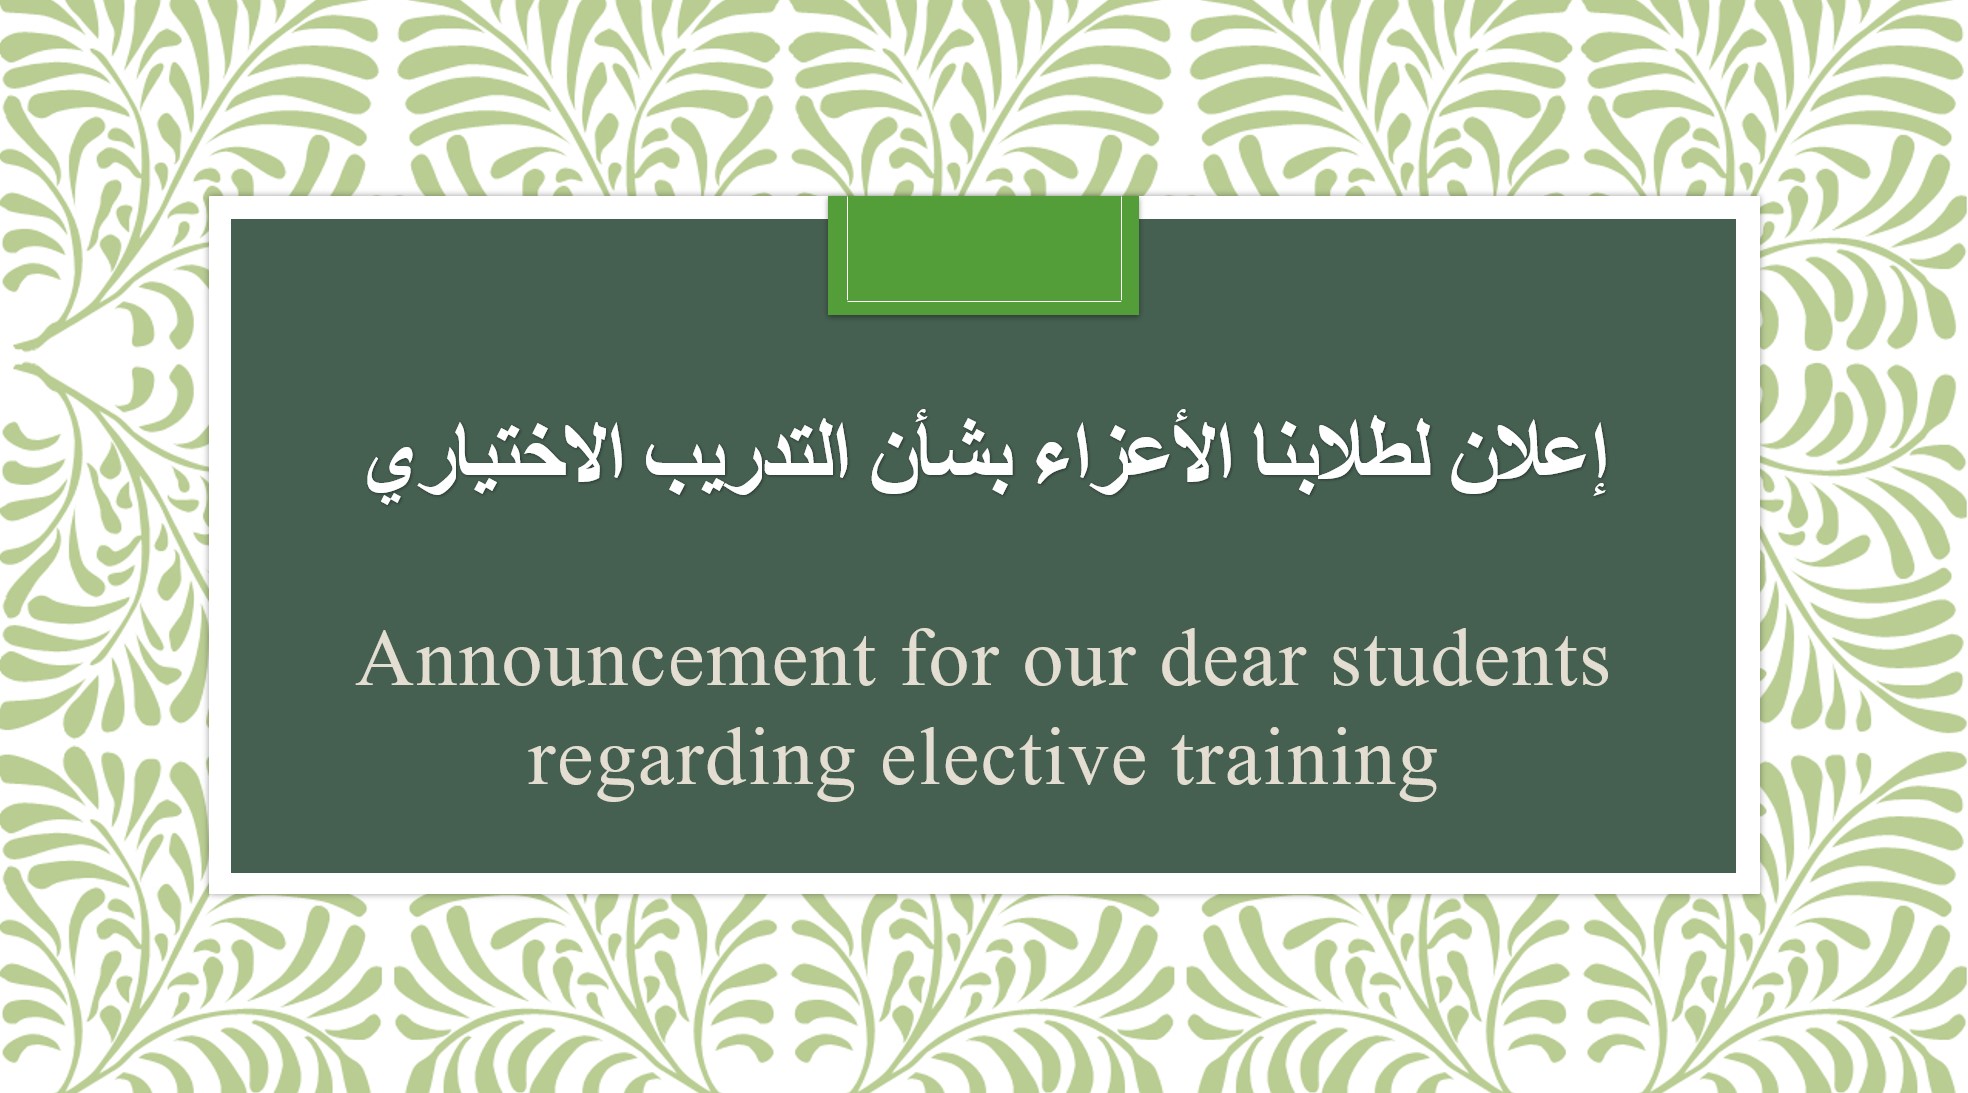 إعلان لطلابنا الأعزاء بشأن التدريب الاختياري